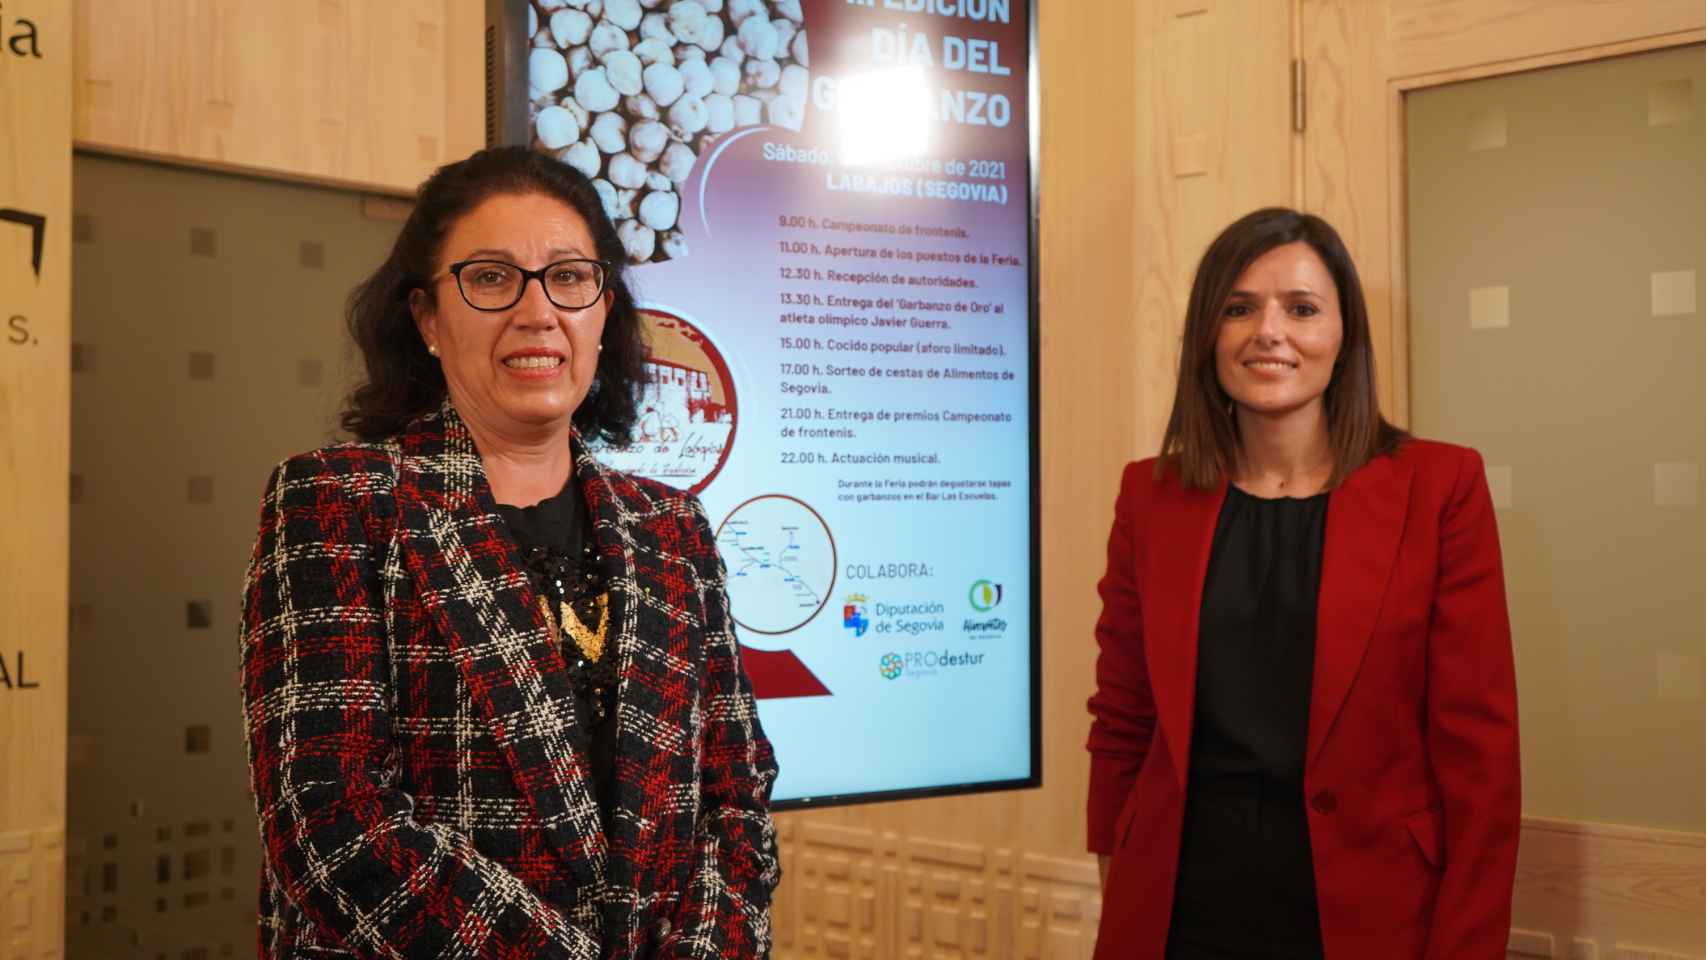 Sara Dueñas, vicepresidenta de la Diputación, y Margarita Meroño, alcaldesa de Labajos